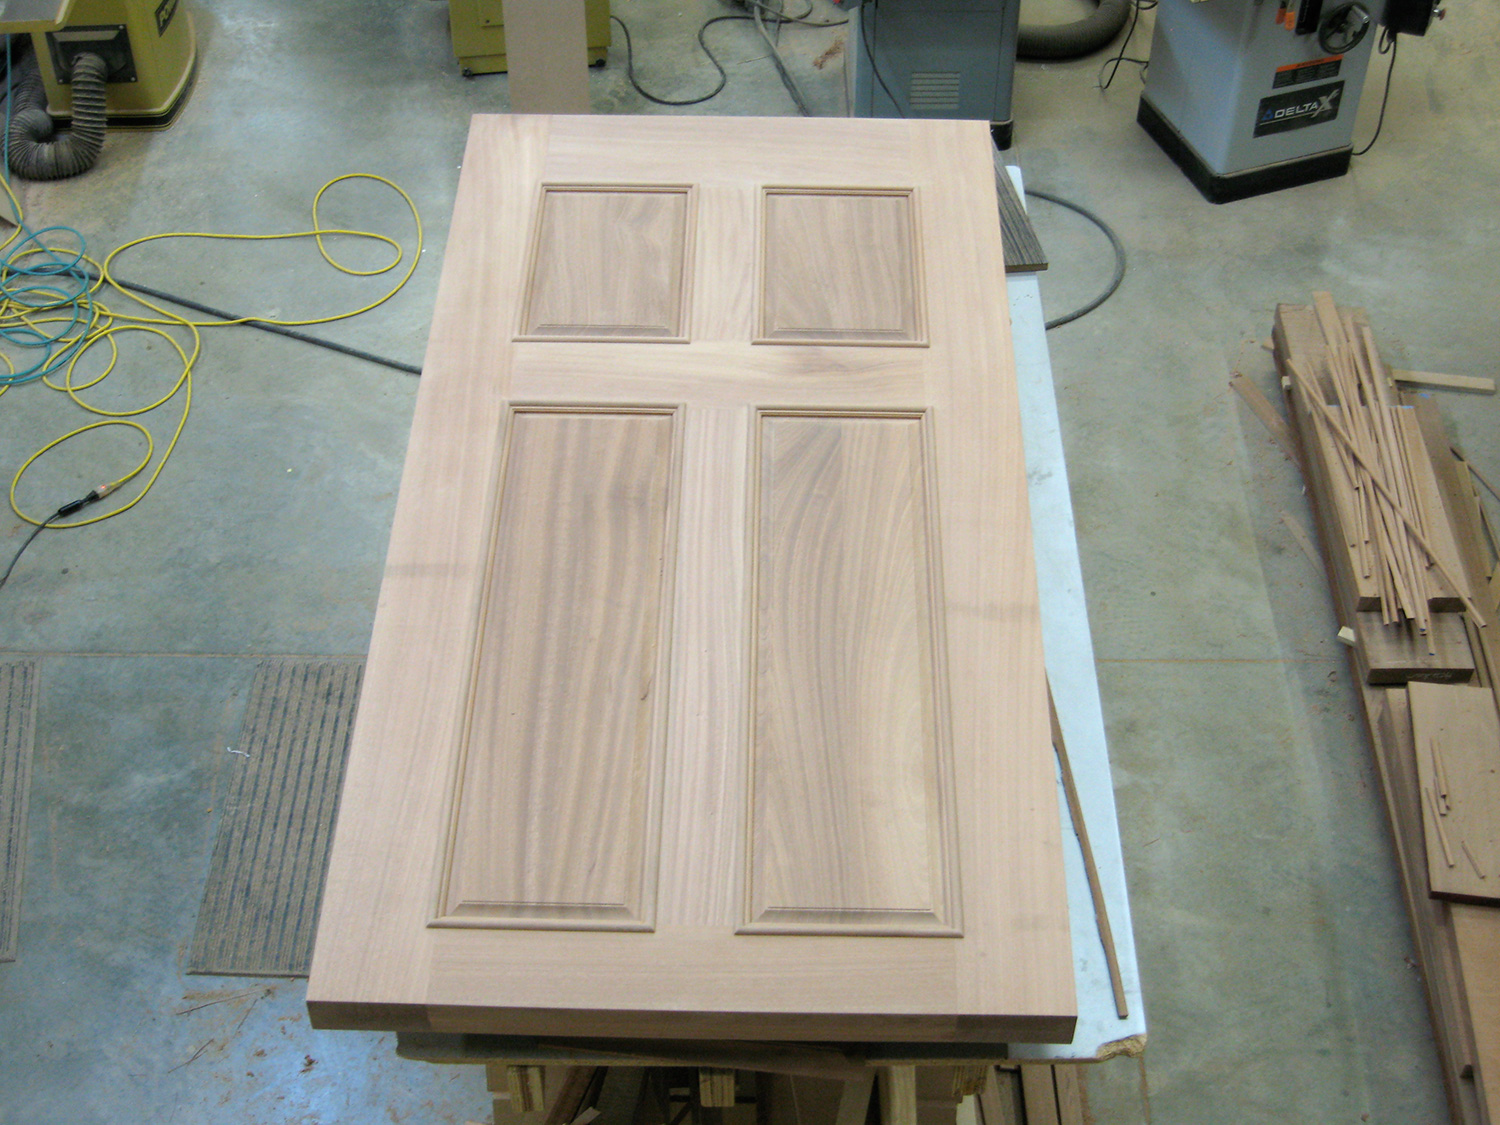 3 1/2” thick custom front door out of mahogany. Gallatin, NY.